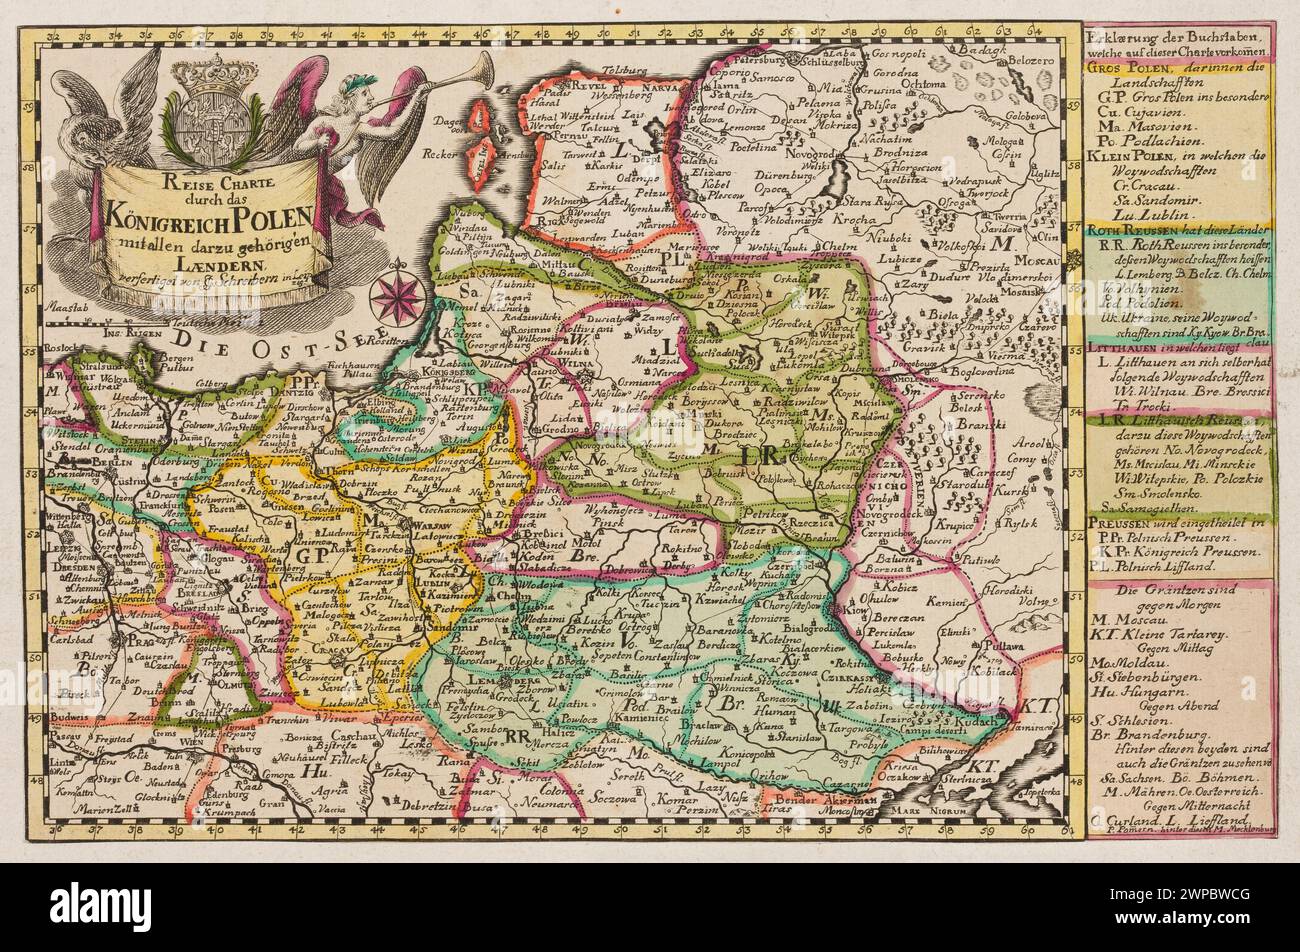 Reise Kharty Durch Das Königreich Polen Mit Allen Darz Gehörigen Laendern; Schreiber, Johann Georg (1676-1750); 1733-1763 (1733-00-00-1763-00-00);Poland, the Polish -Lithuanian Commonwealth (coat of arms), roads, heraldic cartouches, maps Stock Photo